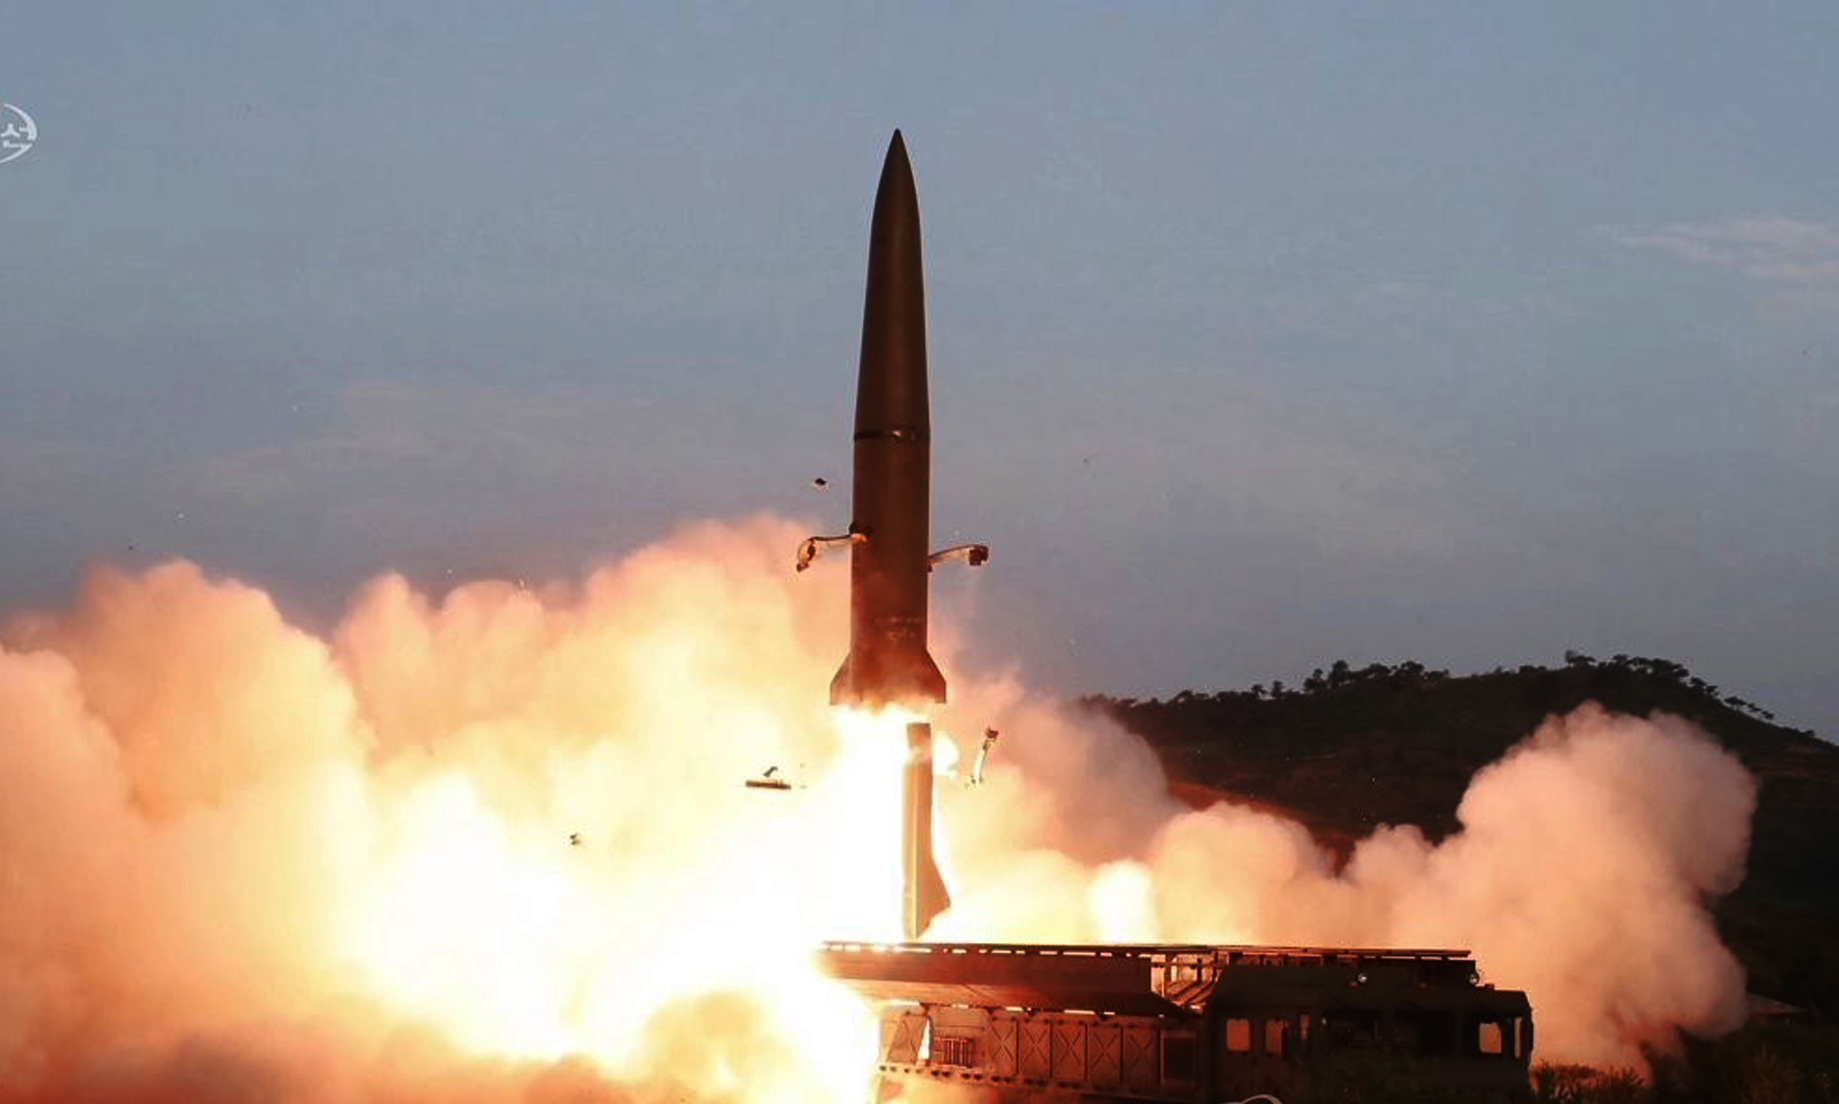 Europeans urge strict sanctions enforcement on North Korea